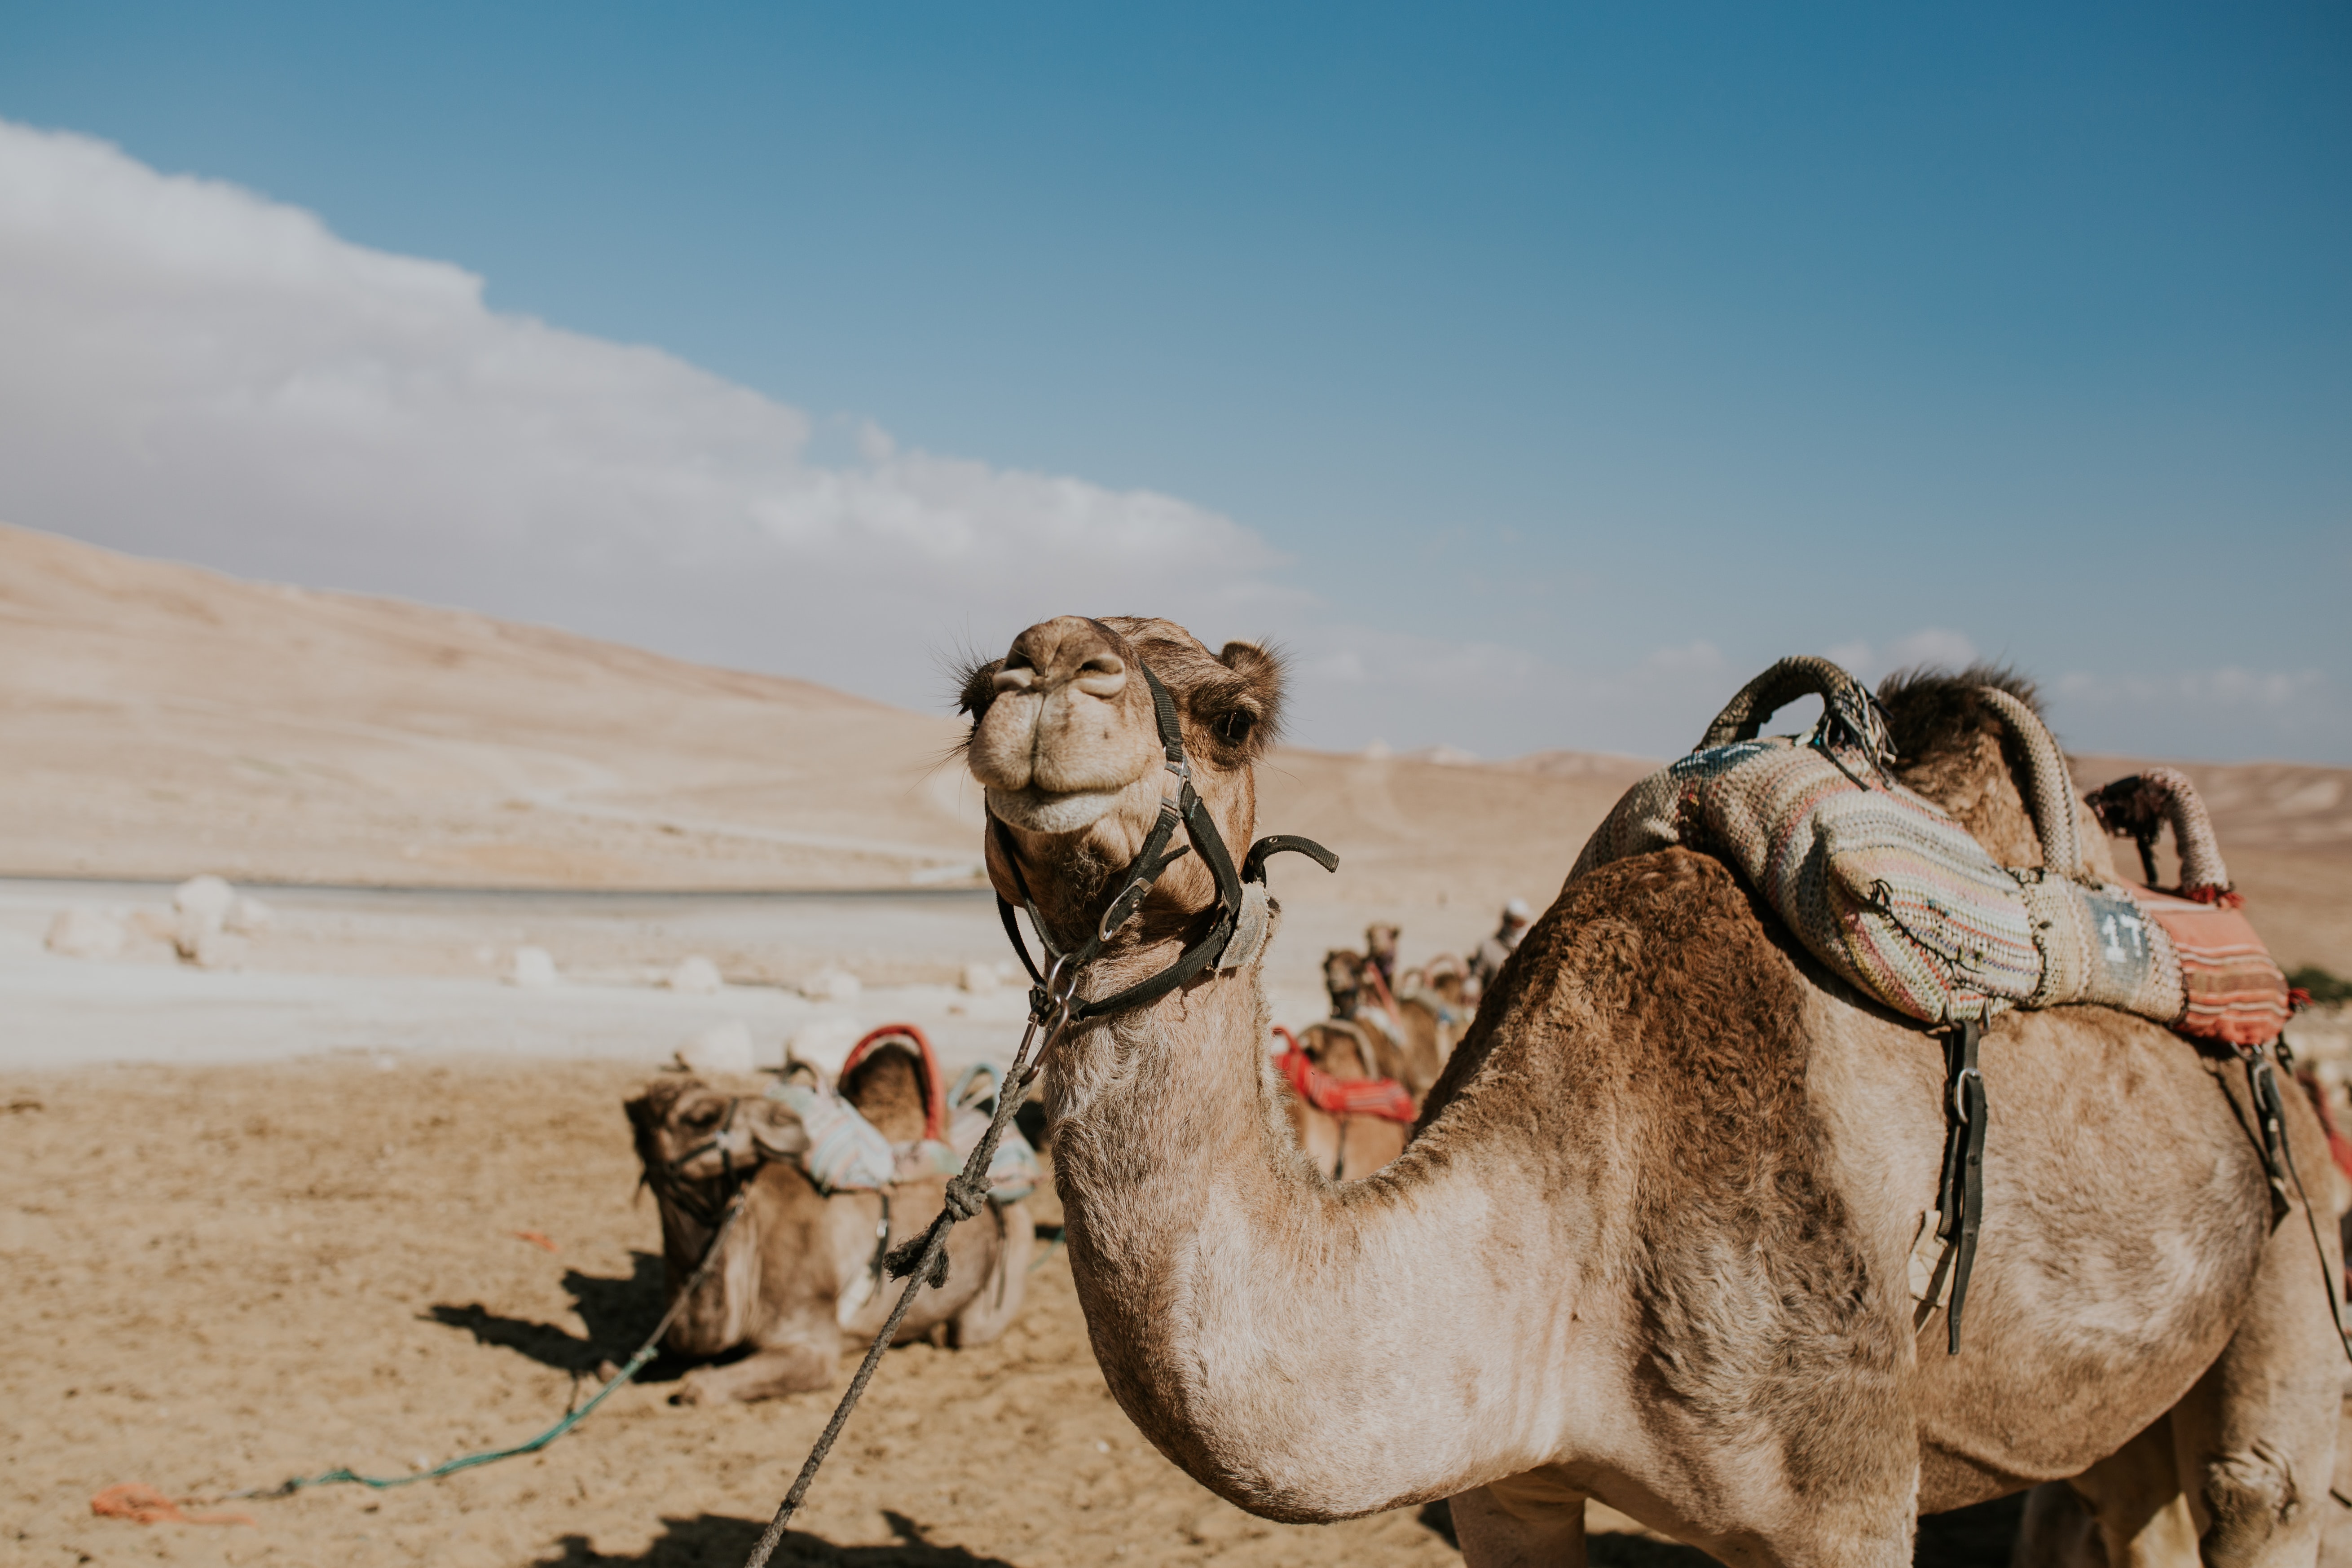 A camel rests between trips, Negev Desert